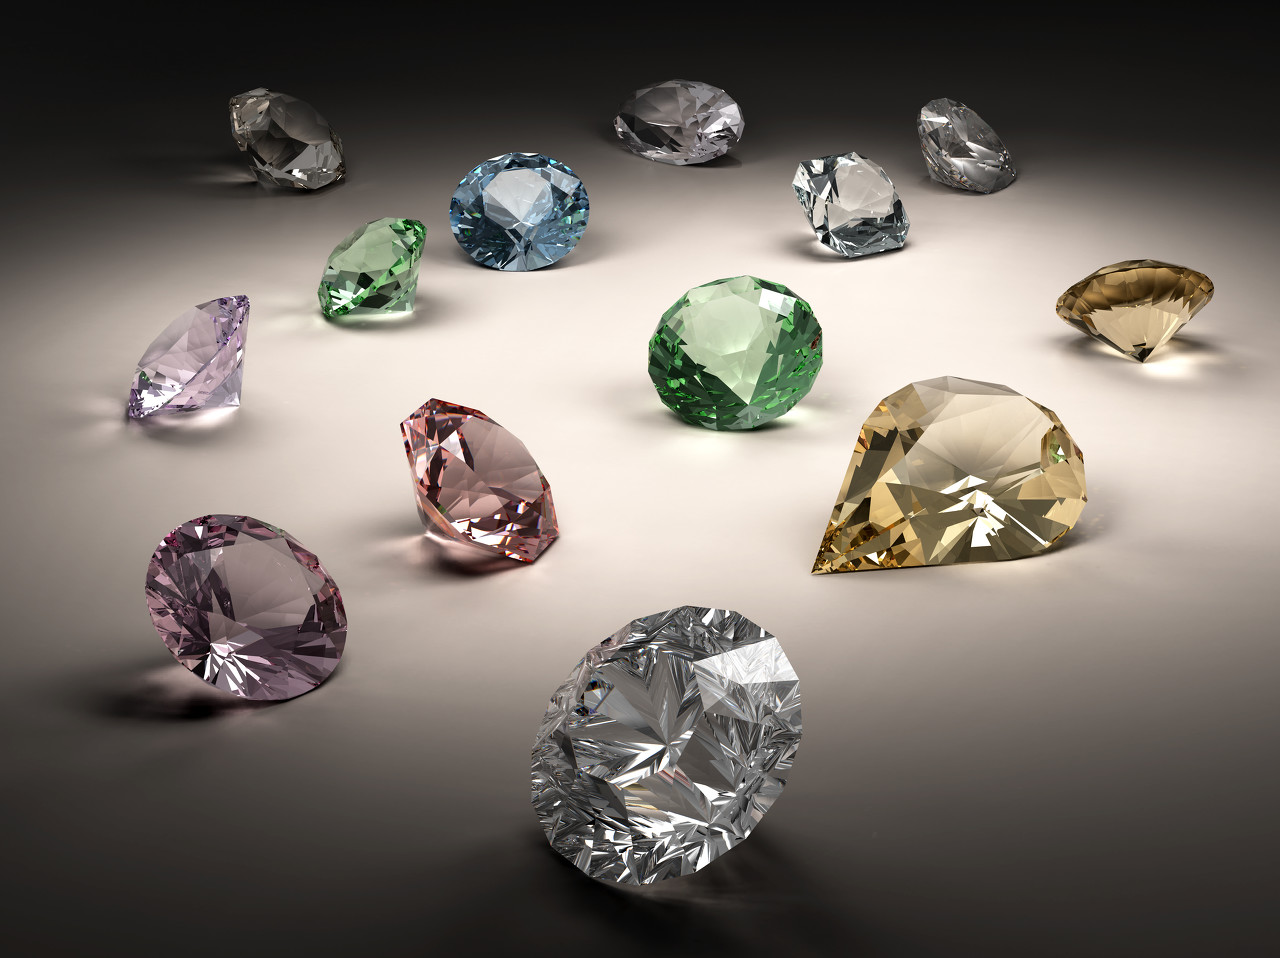 力拓公司举办钻石招标会 58颗钻石达到了创纪录的价格